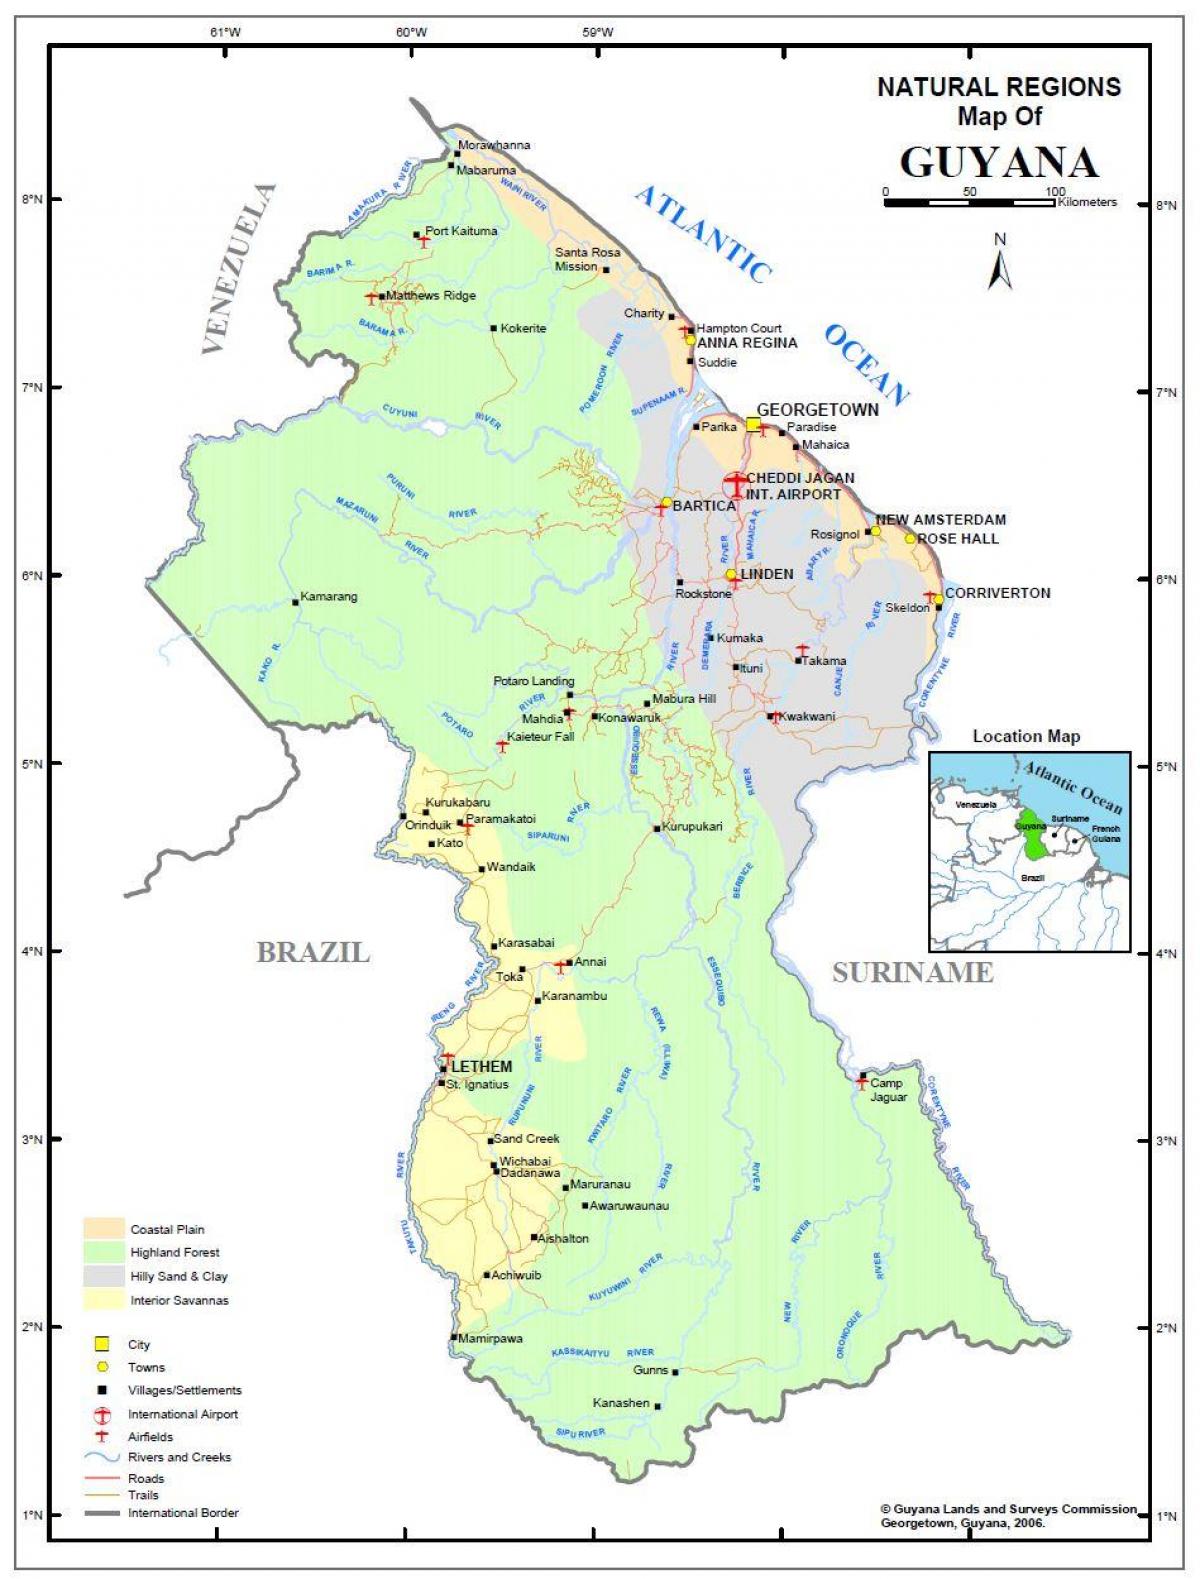 քարտեզ Գայանա, ցույց է 4 բնական տարածաշրջանների